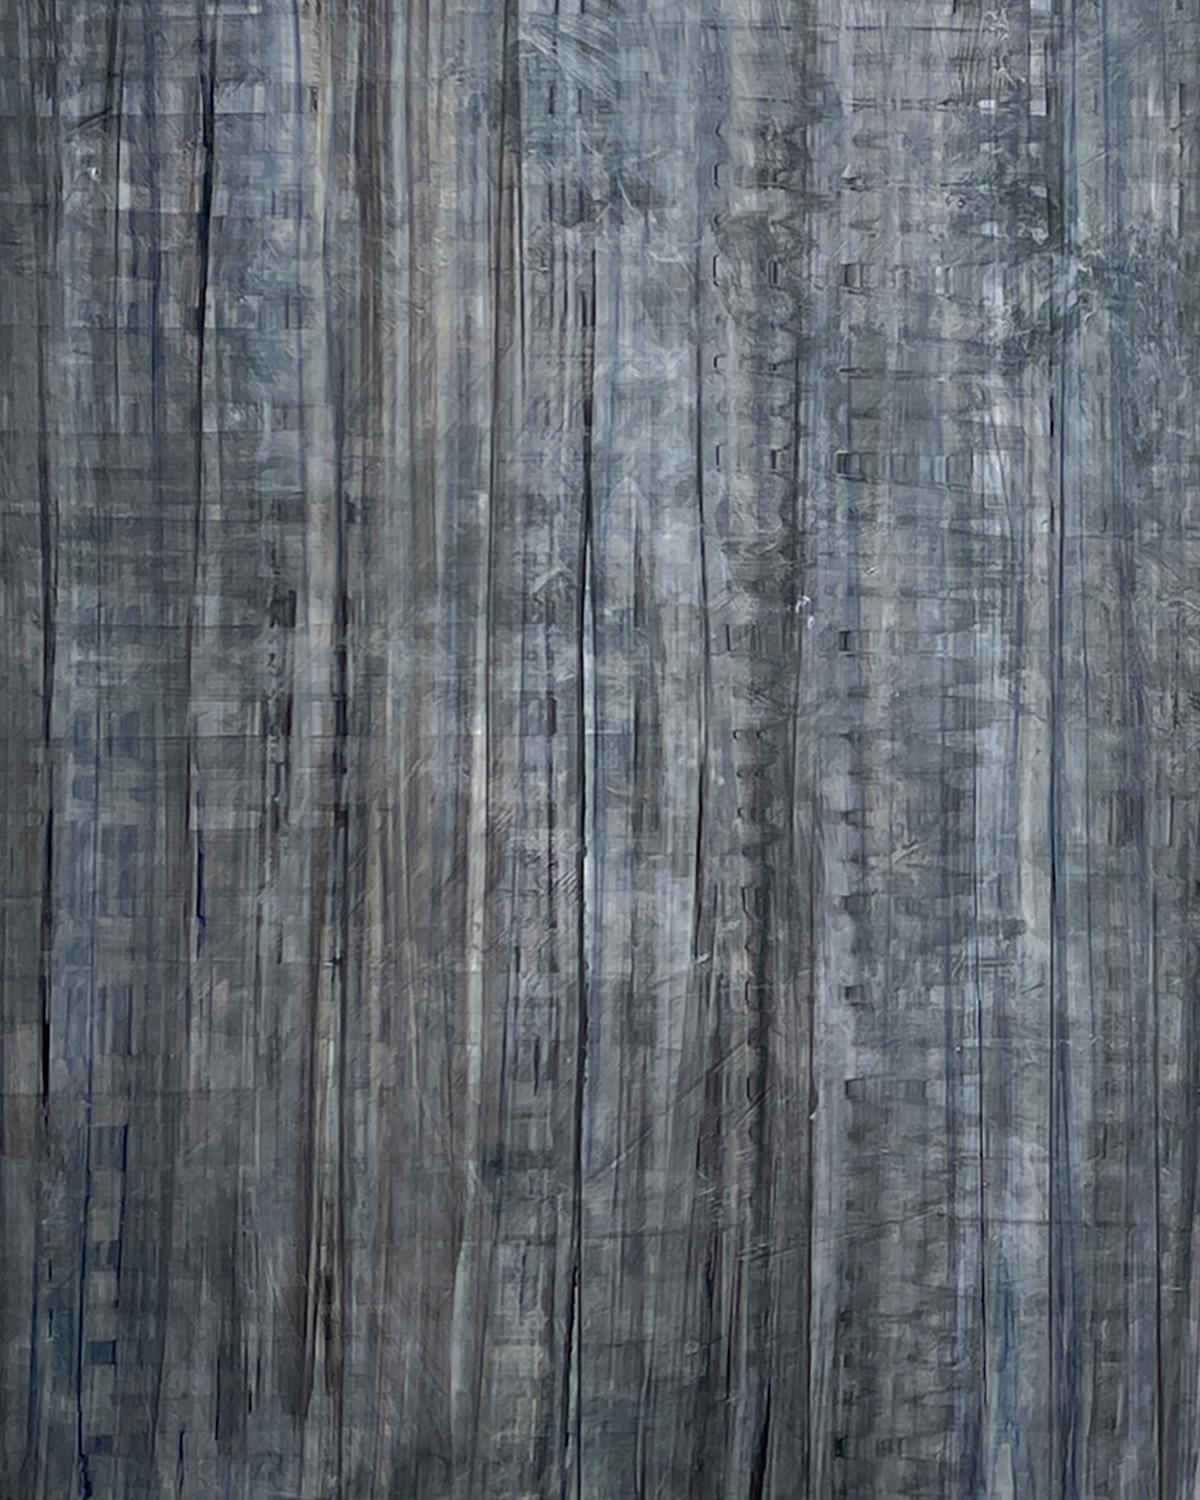 C23-6, 2023  Geometrische abstrakte Farbe Feld Panel Malerei von Ginny Fox in Charcoal Gray

Gemälde ist auf drei Tafeln
(2) 24 x 18 Zoll, (1) 24 x 12 Zoll
Can horizontal oder vertikal ausgerichtet werden

Die abstrakten, mehrteiligen Gemälde von